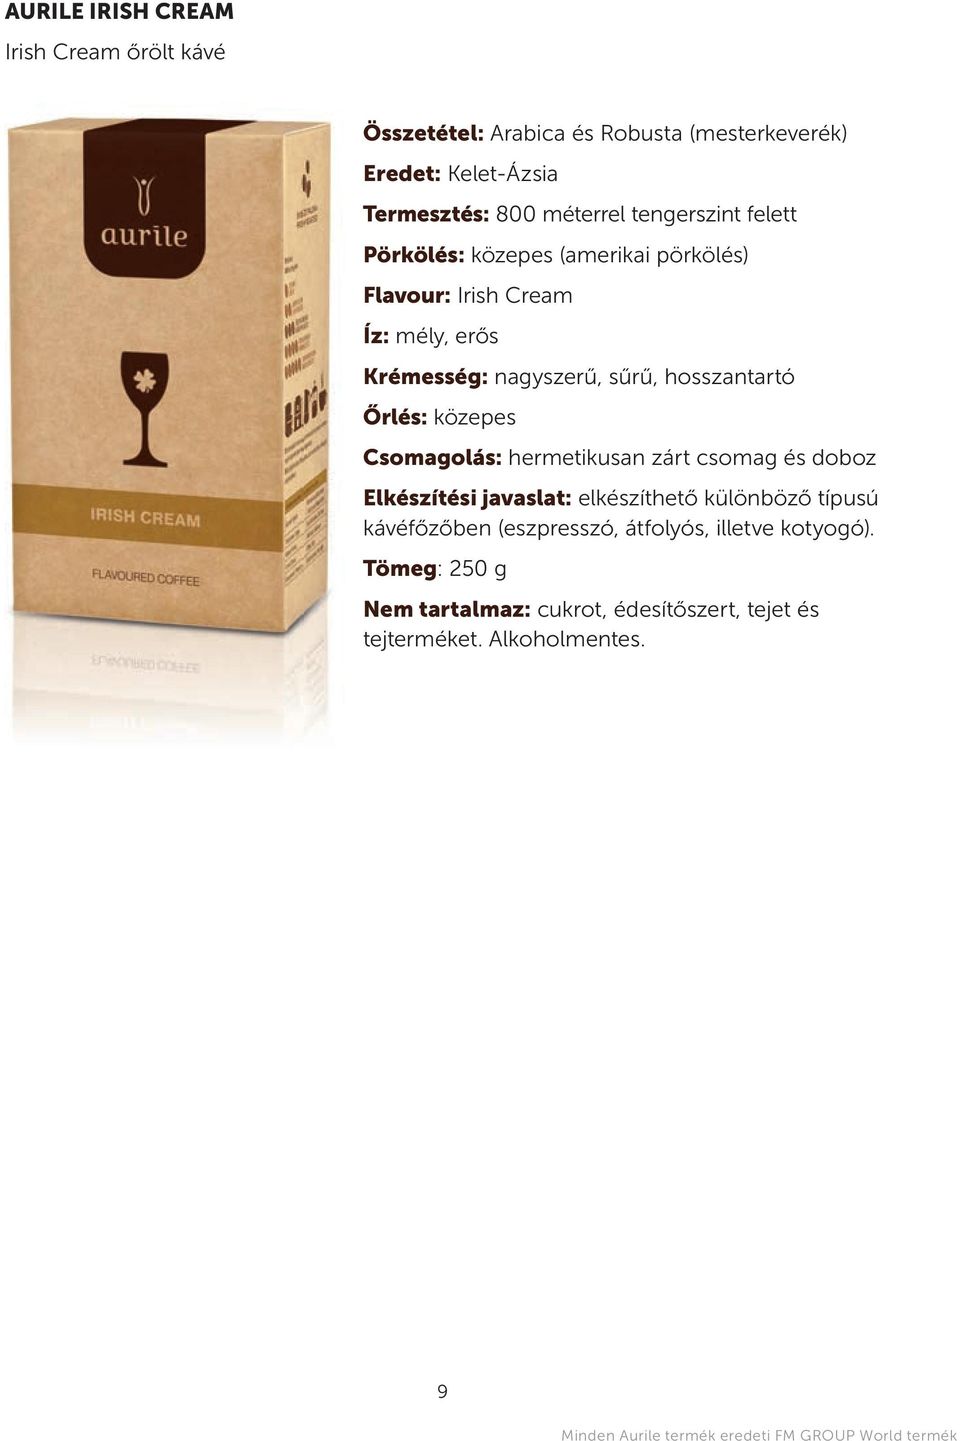 közepes csomagolás: hermetikusan zárt csomag és doboz elkészítési javaslat: elkészíthető különböző típusú kávéfőzőben (eszpresszó, átfolyós,